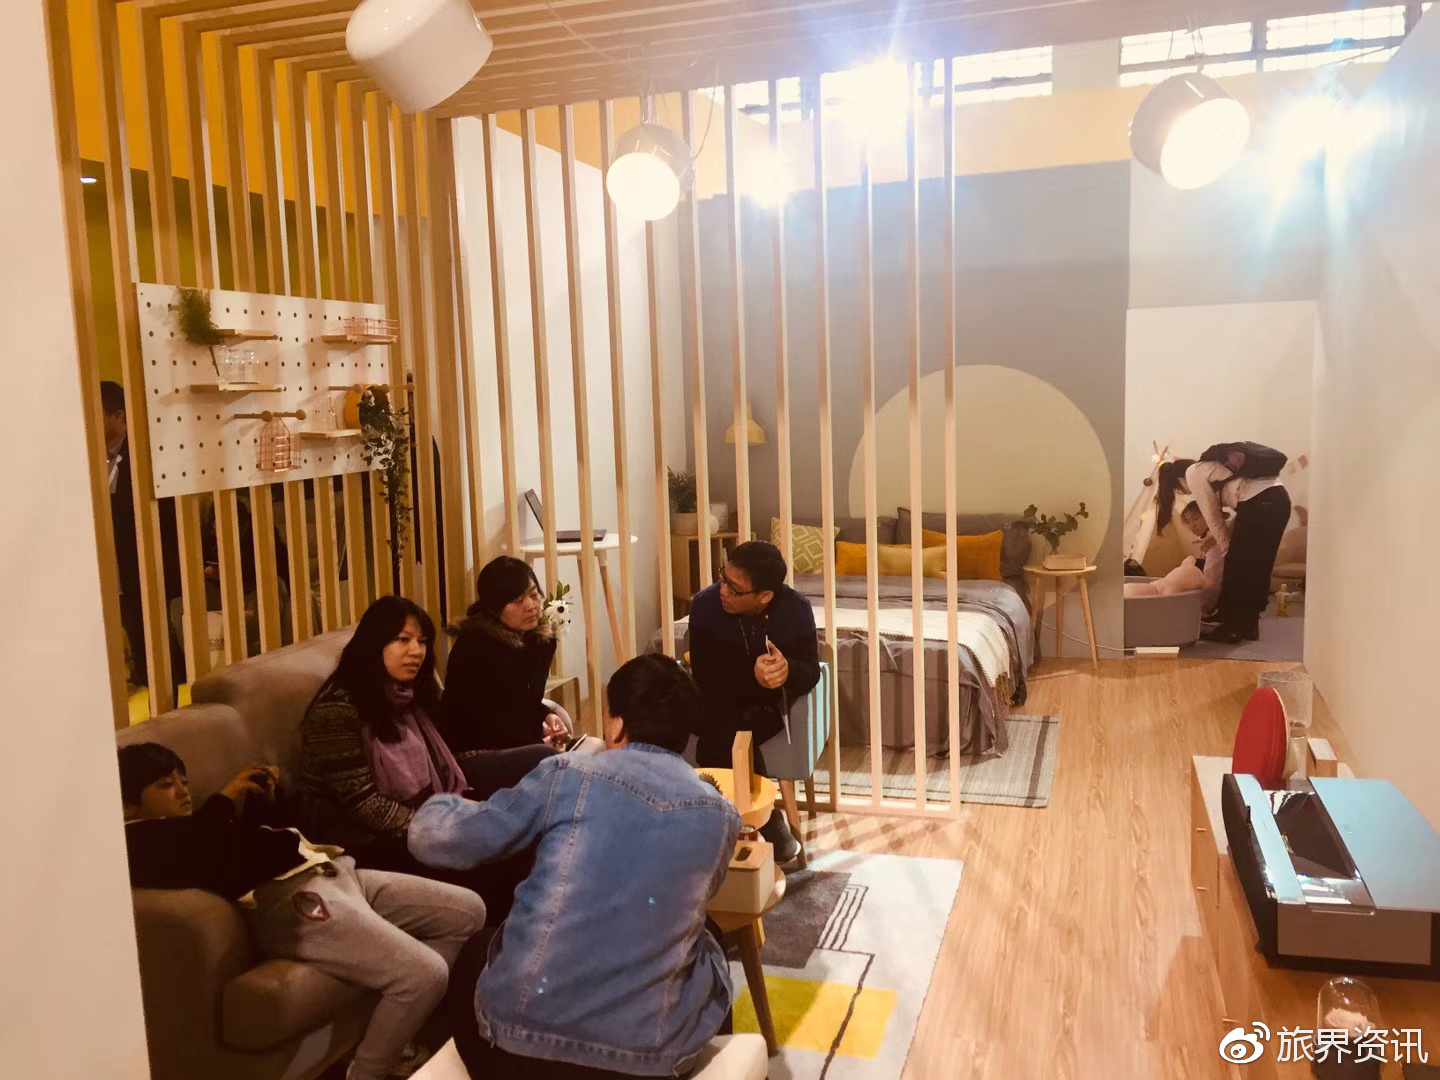 有家民宿概念房亮相2018北京国际民宿产业博